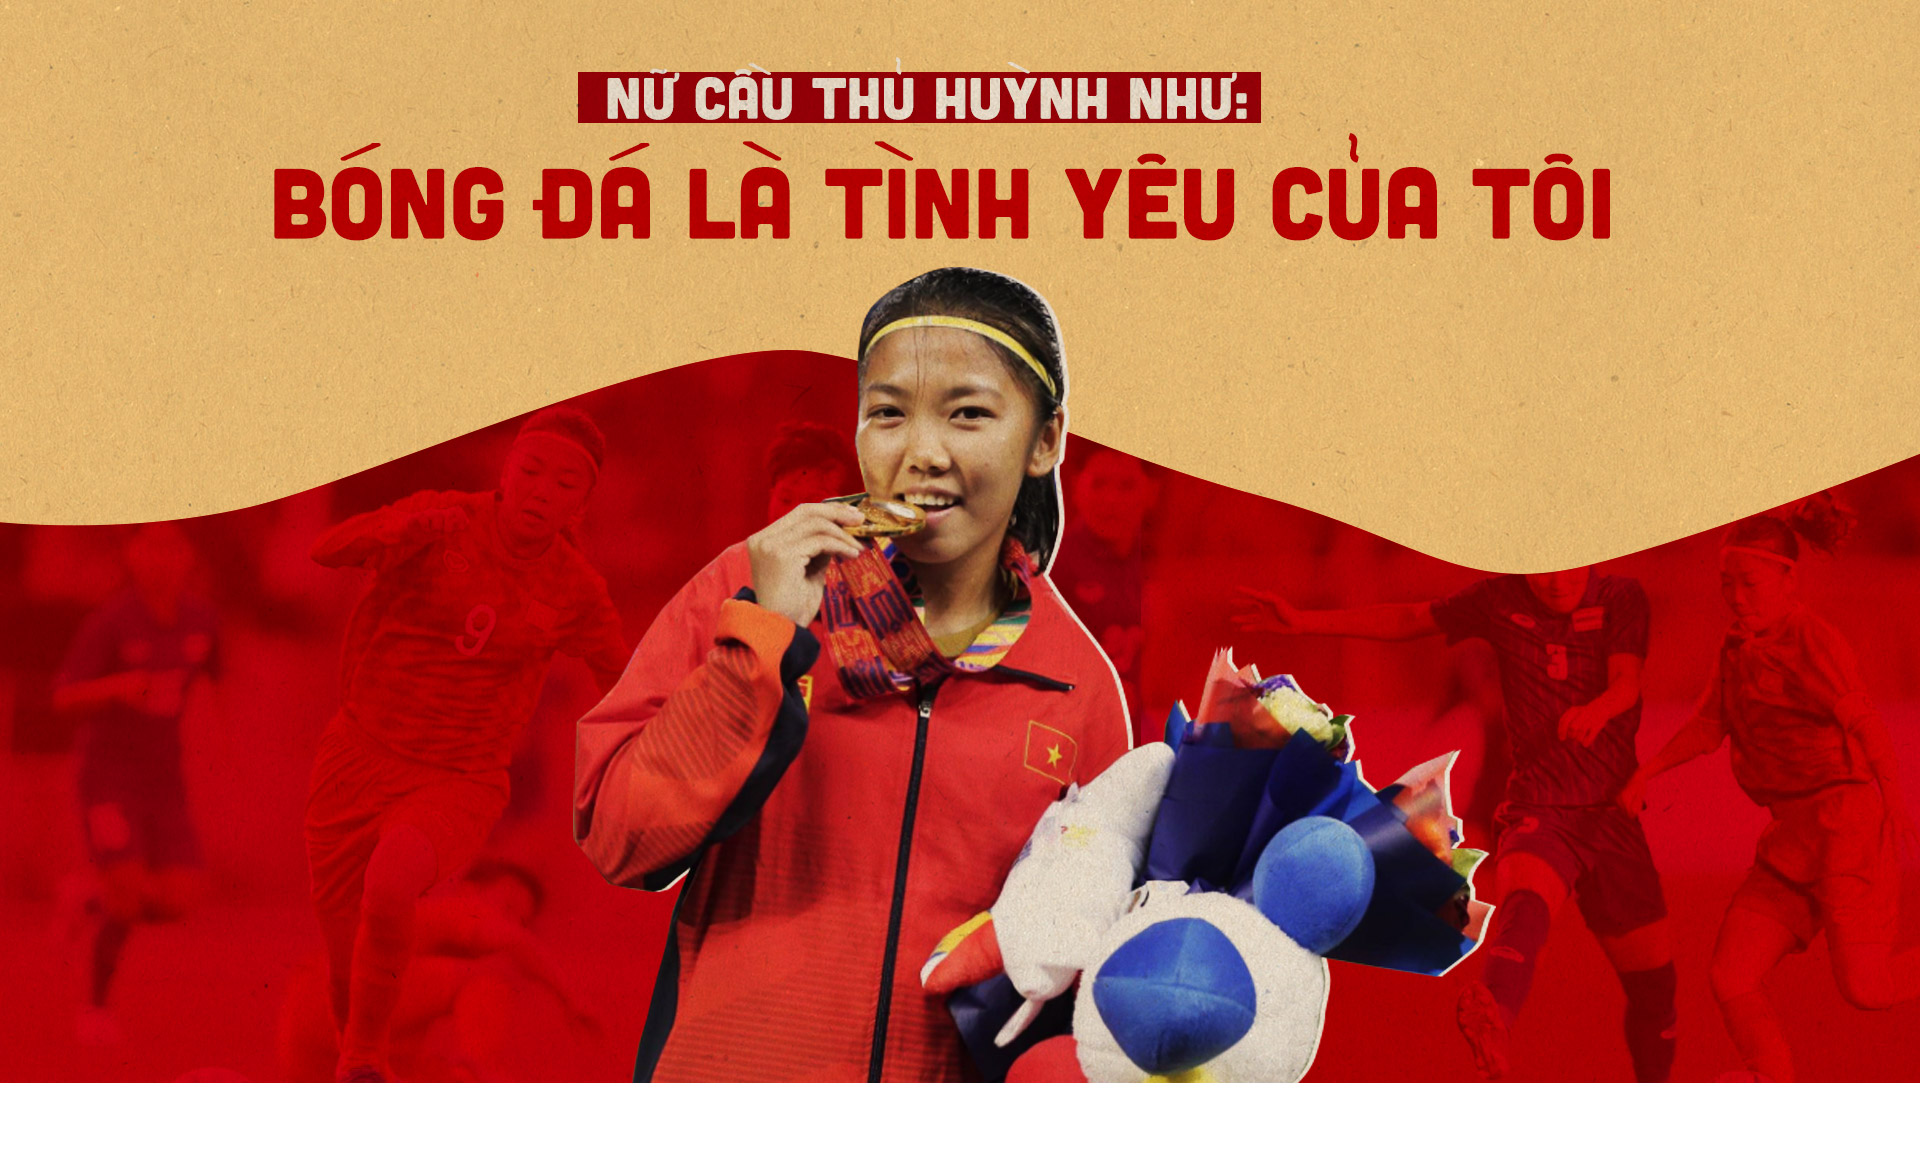 Nữ cầu thủ Huỳnh Như: Bóng đá là tình yêu của tôi